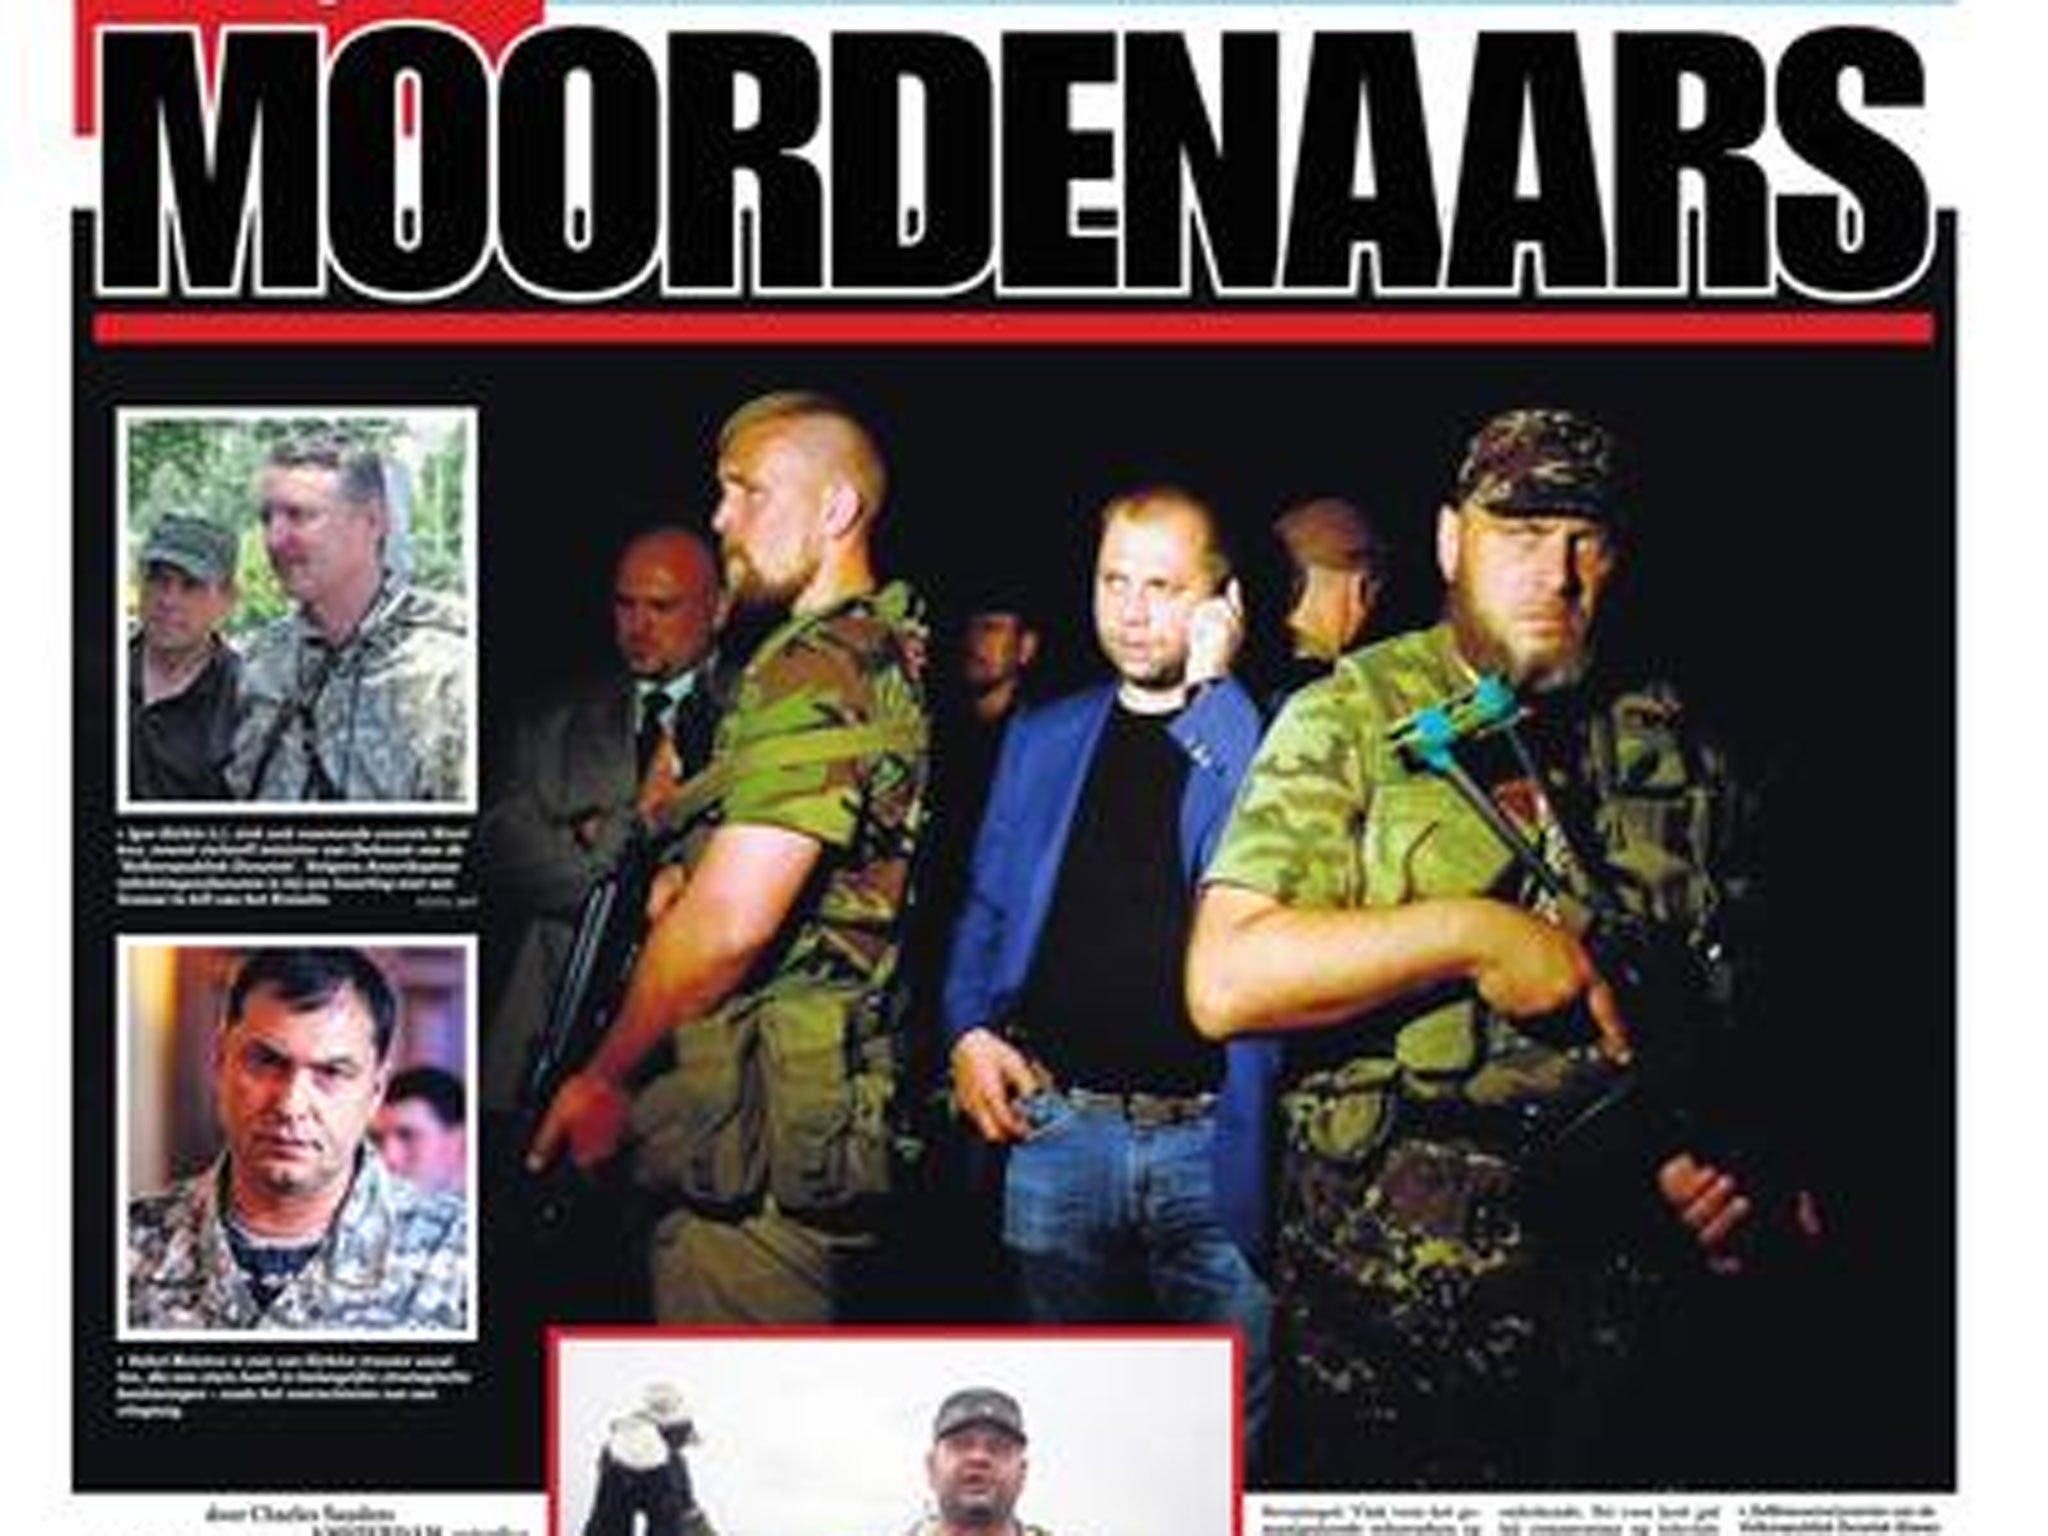 De Telegraaf - the biggest Dutch paper in terms of circulation - described the Ukrainian separatists as 'murderers'